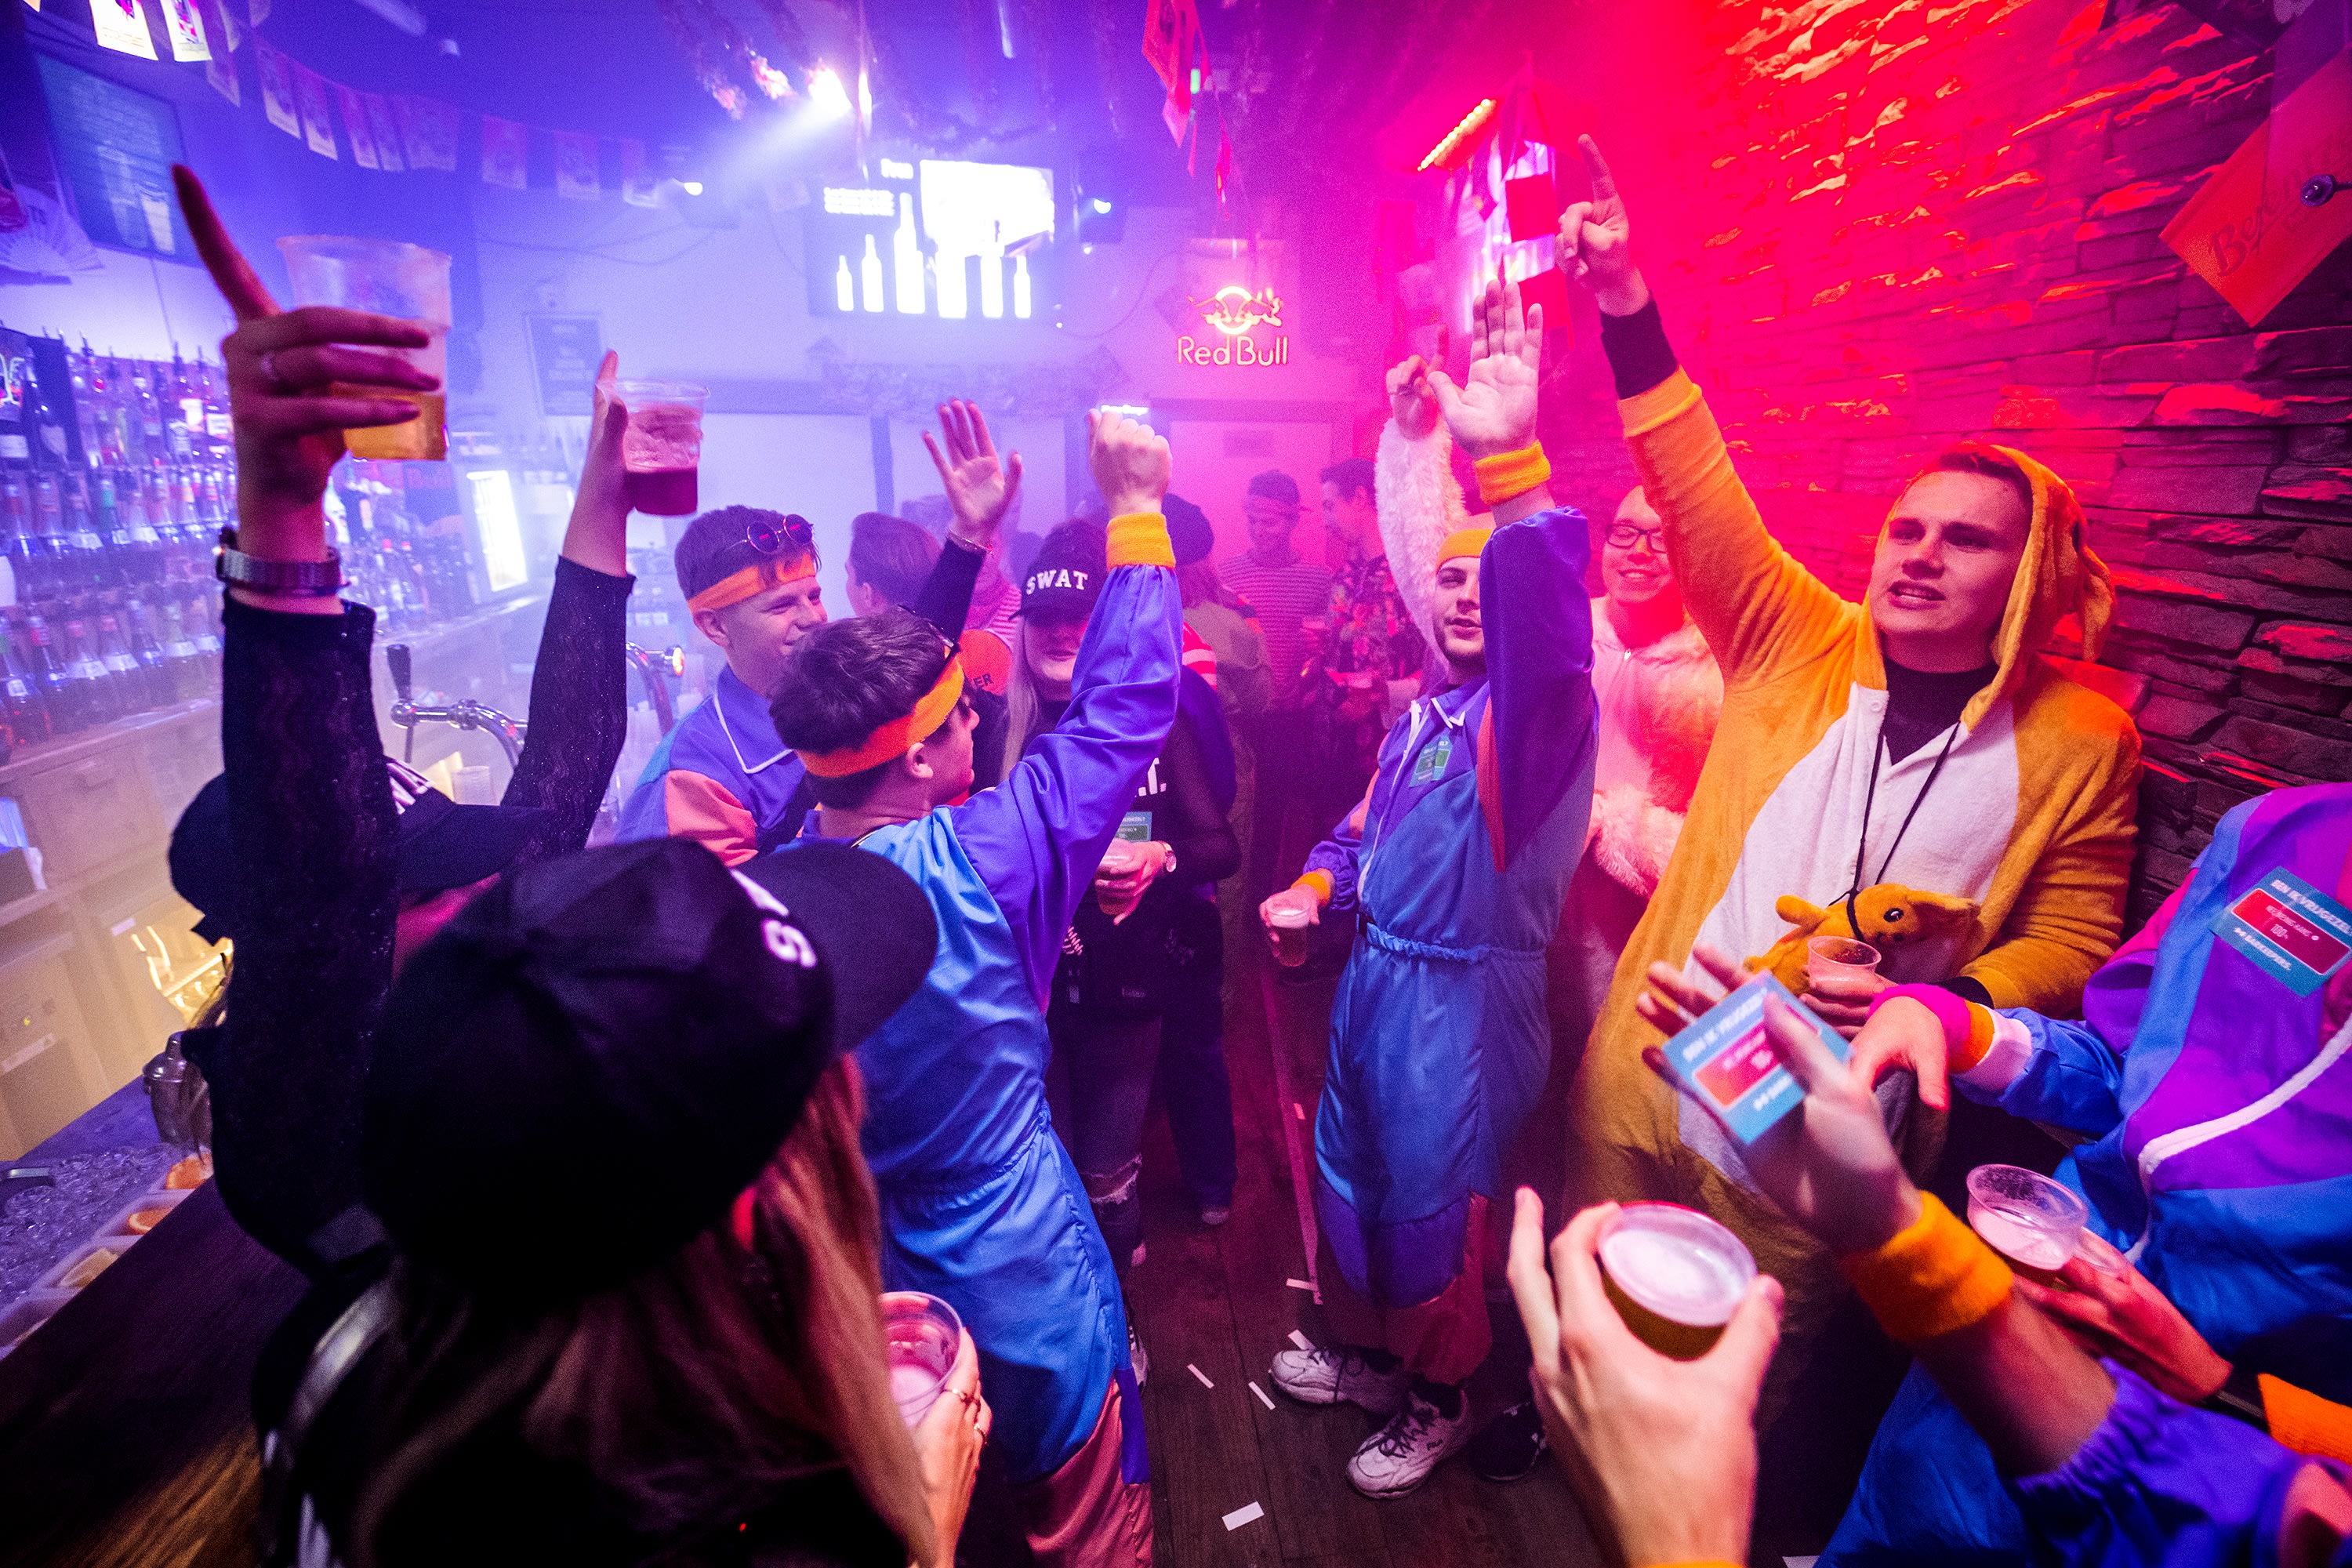 Politie spreekt van gezellige carnavalsnacht in Breda en Tilburg, ondanks meerdere aanhoudingen